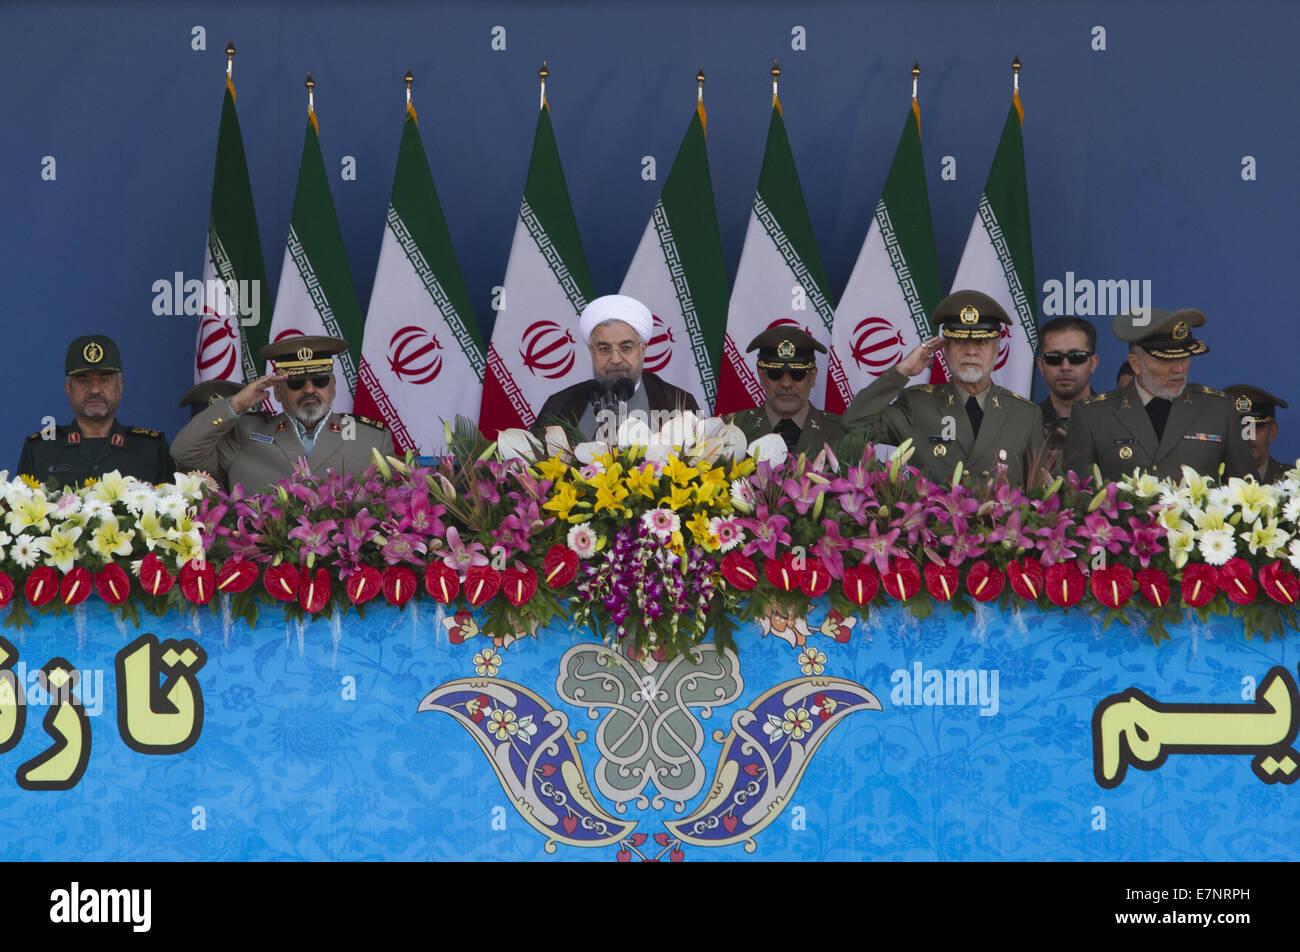 Téhéran, Iran. 22 Sep, 2014. 22 septembre 2014 - Téhéran, Iran - Le Président iranien Hassan Rohani (C) prend la parole lors d'un défilé militaire pour commémorer l'anniversaire de la guerre Iran-Irak (1980-1988) à Téhéran . Morteza Nikoubazl/ZUMAPRESS : Morteza Nikoubazl Crédit/ZUMA/Alamy Fil Live News Banque D'Images